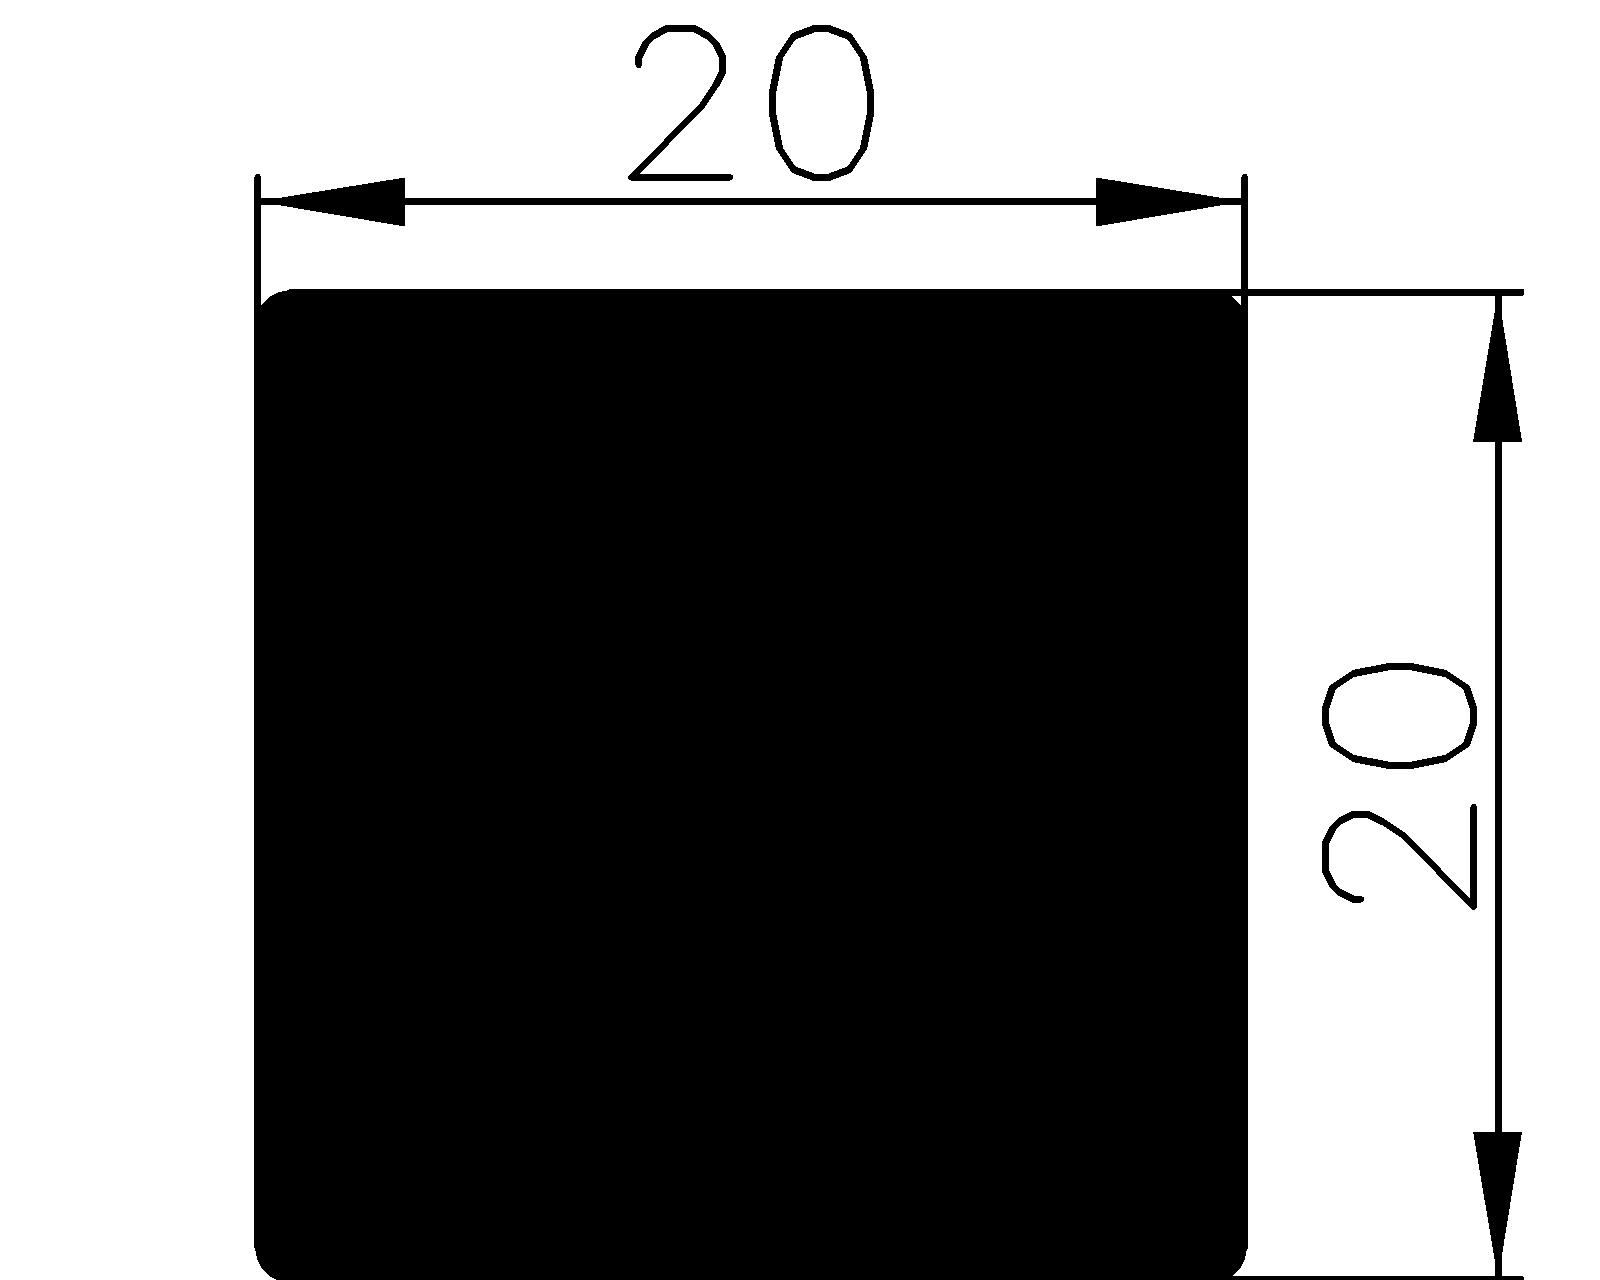 13200350KG - rubber profiles - Square profiles